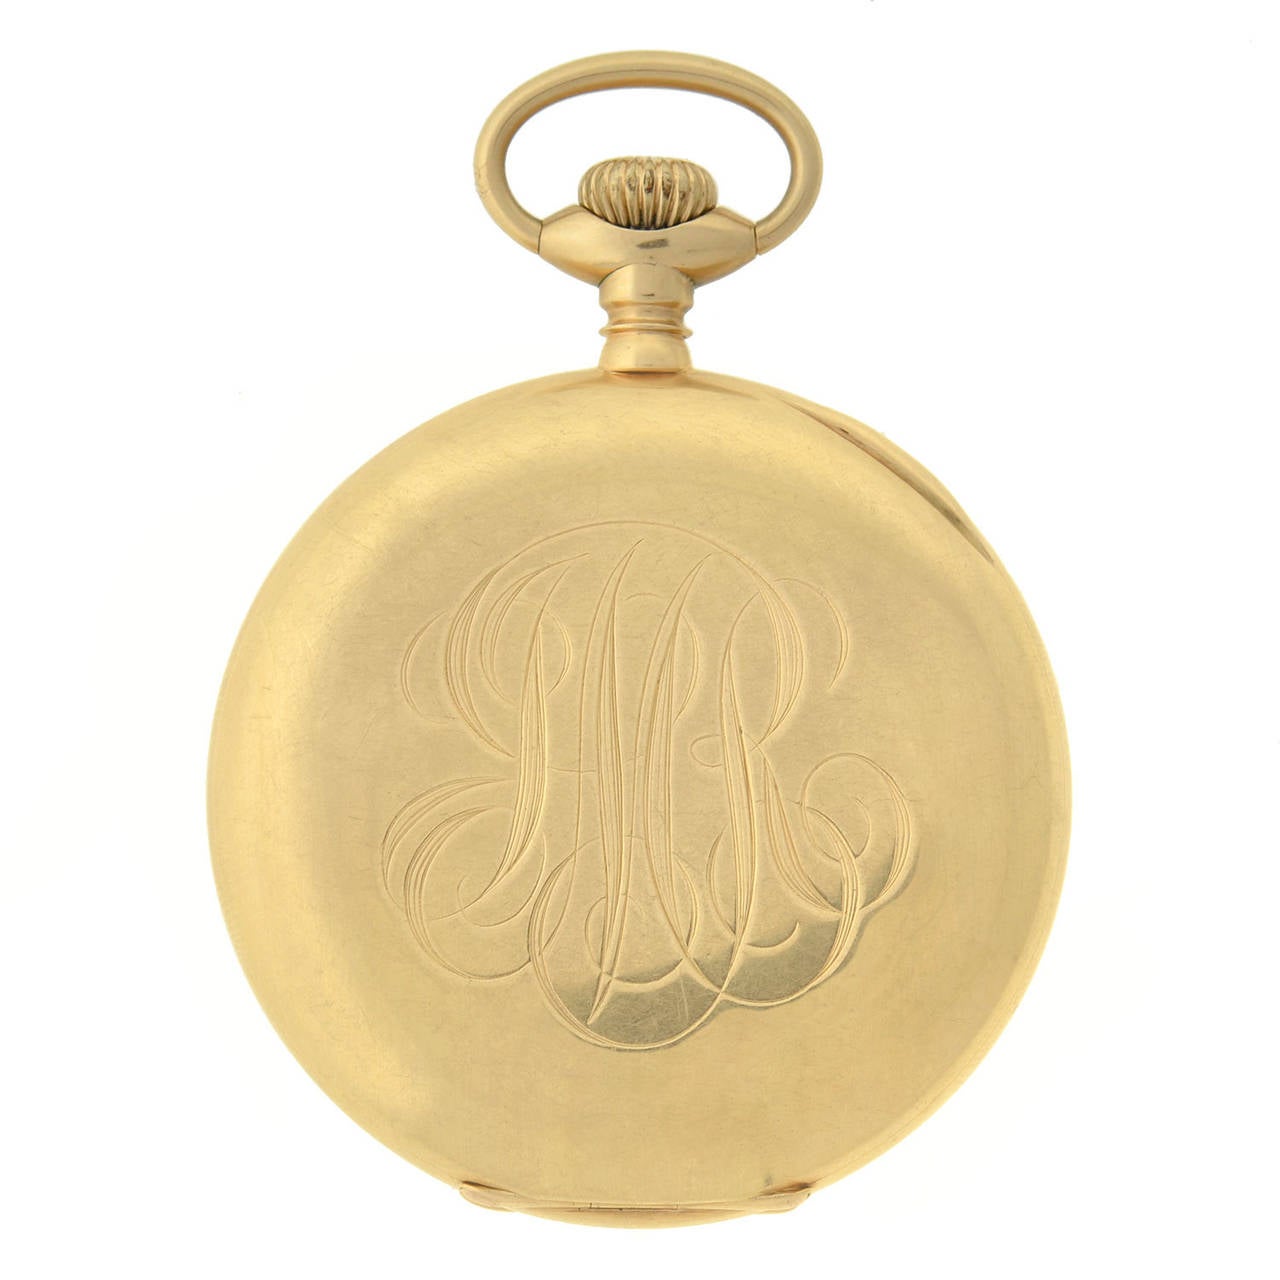 Diese wunderschöne Taschenuhr aus der Zeit um 1904. Signiert von Bailey, Banks & Biddle und Waltham. 14 Karat Gelbgold, weißes Zifferblatt mit filigranen Goldzeigern. Die eingravierte Inschrift lautet 